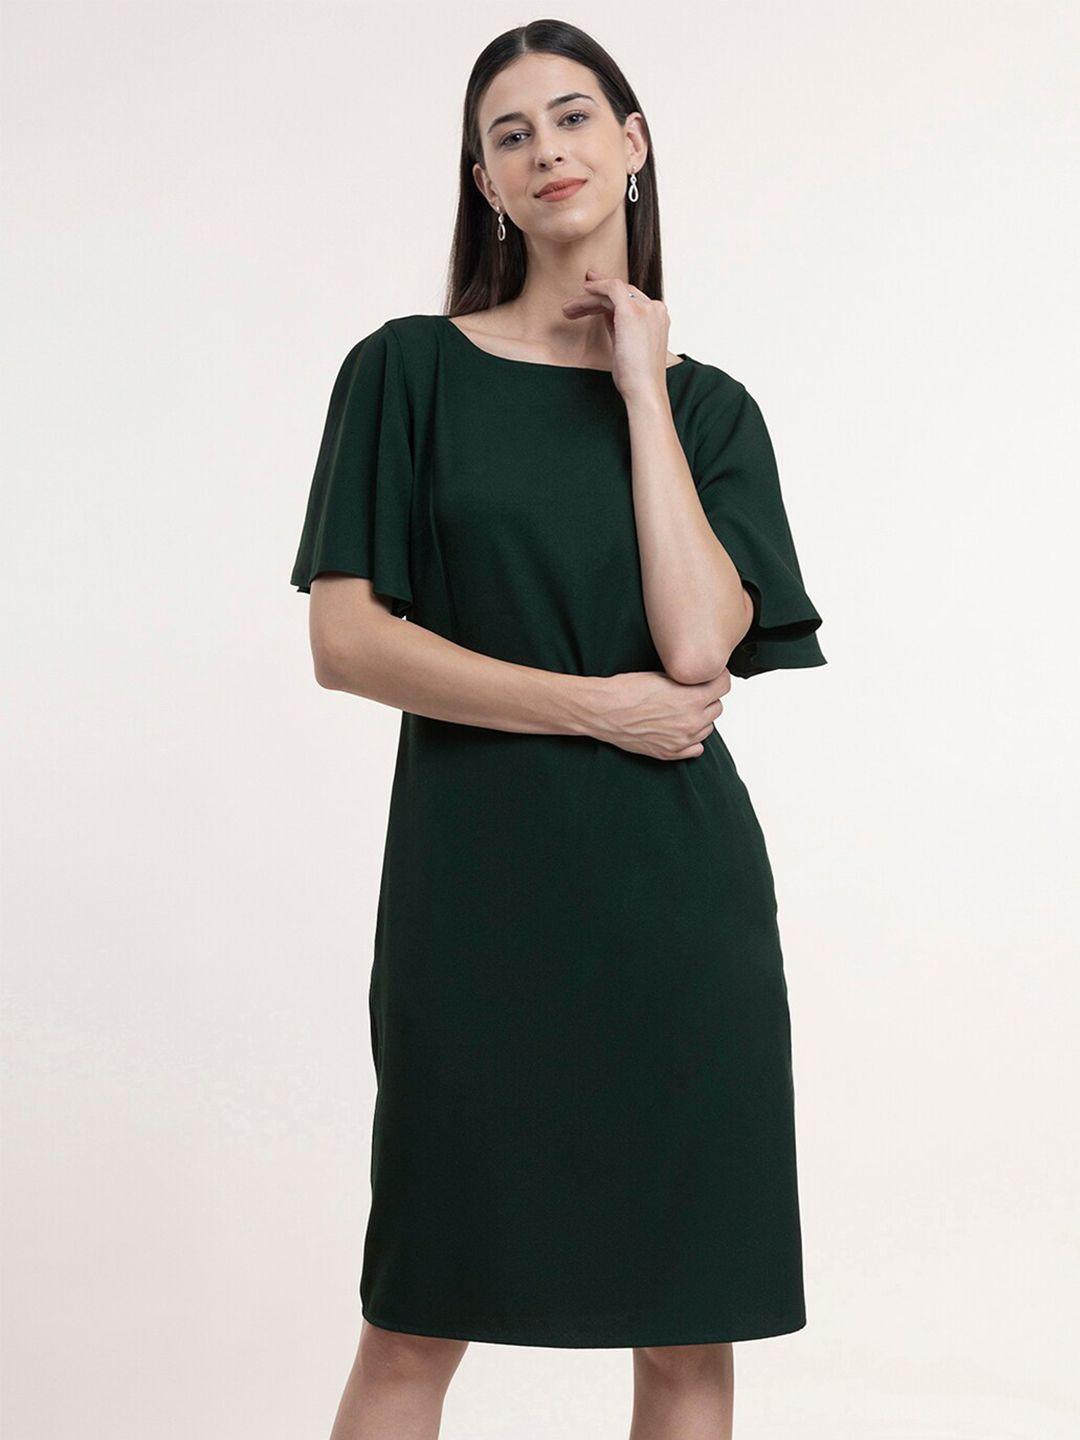 fablestreet-green-formal-sheath-dress